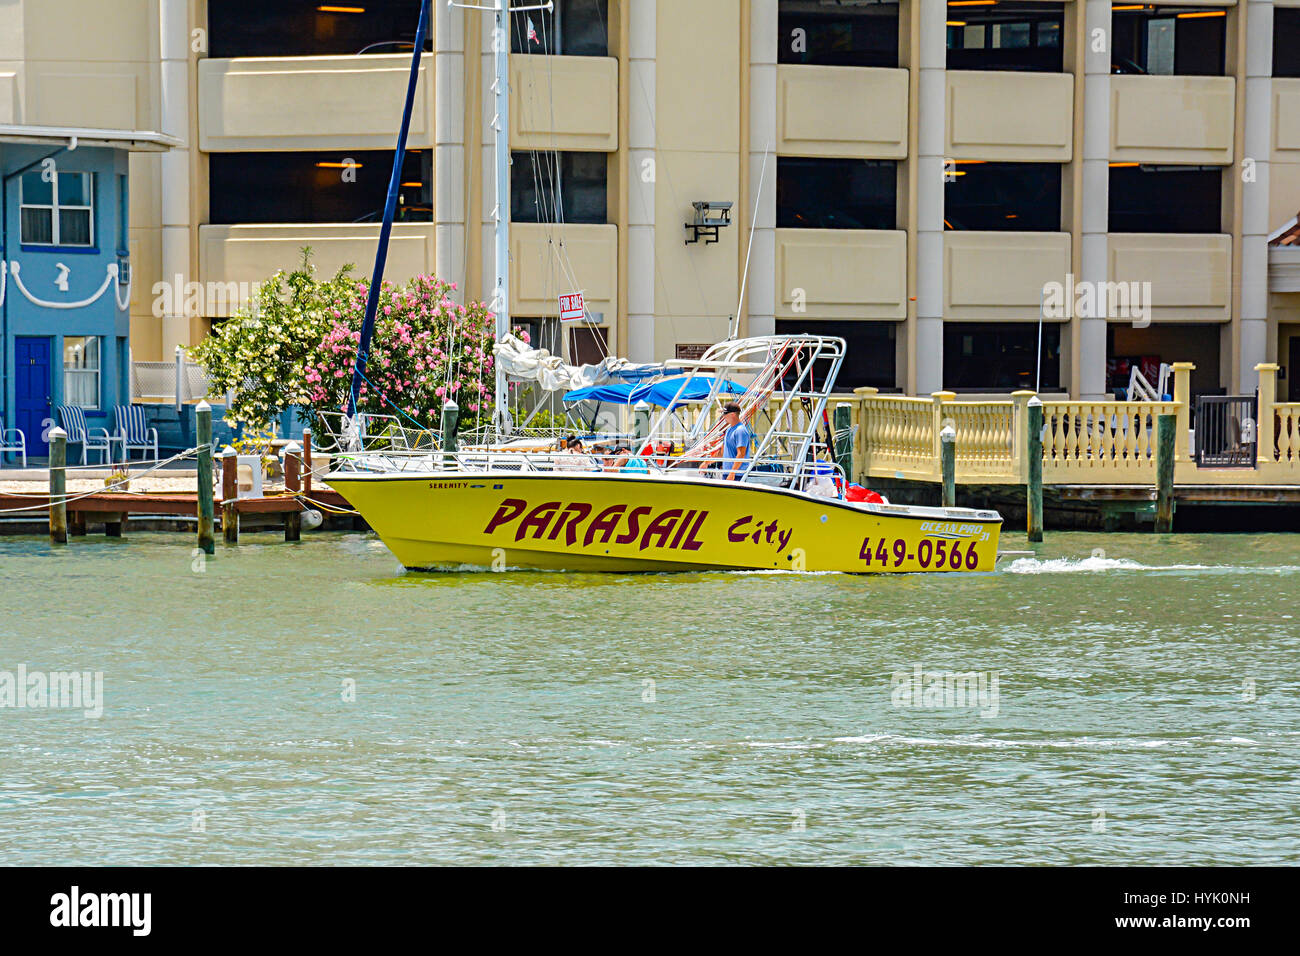 Kommerzielle Boote zum Parasailing verlässt Hafen am Clearwater Beach, Florida, Yachthafen, aufregenden Wassersport-Aktivitäten und Sightseeing Ausflug Stockfoto